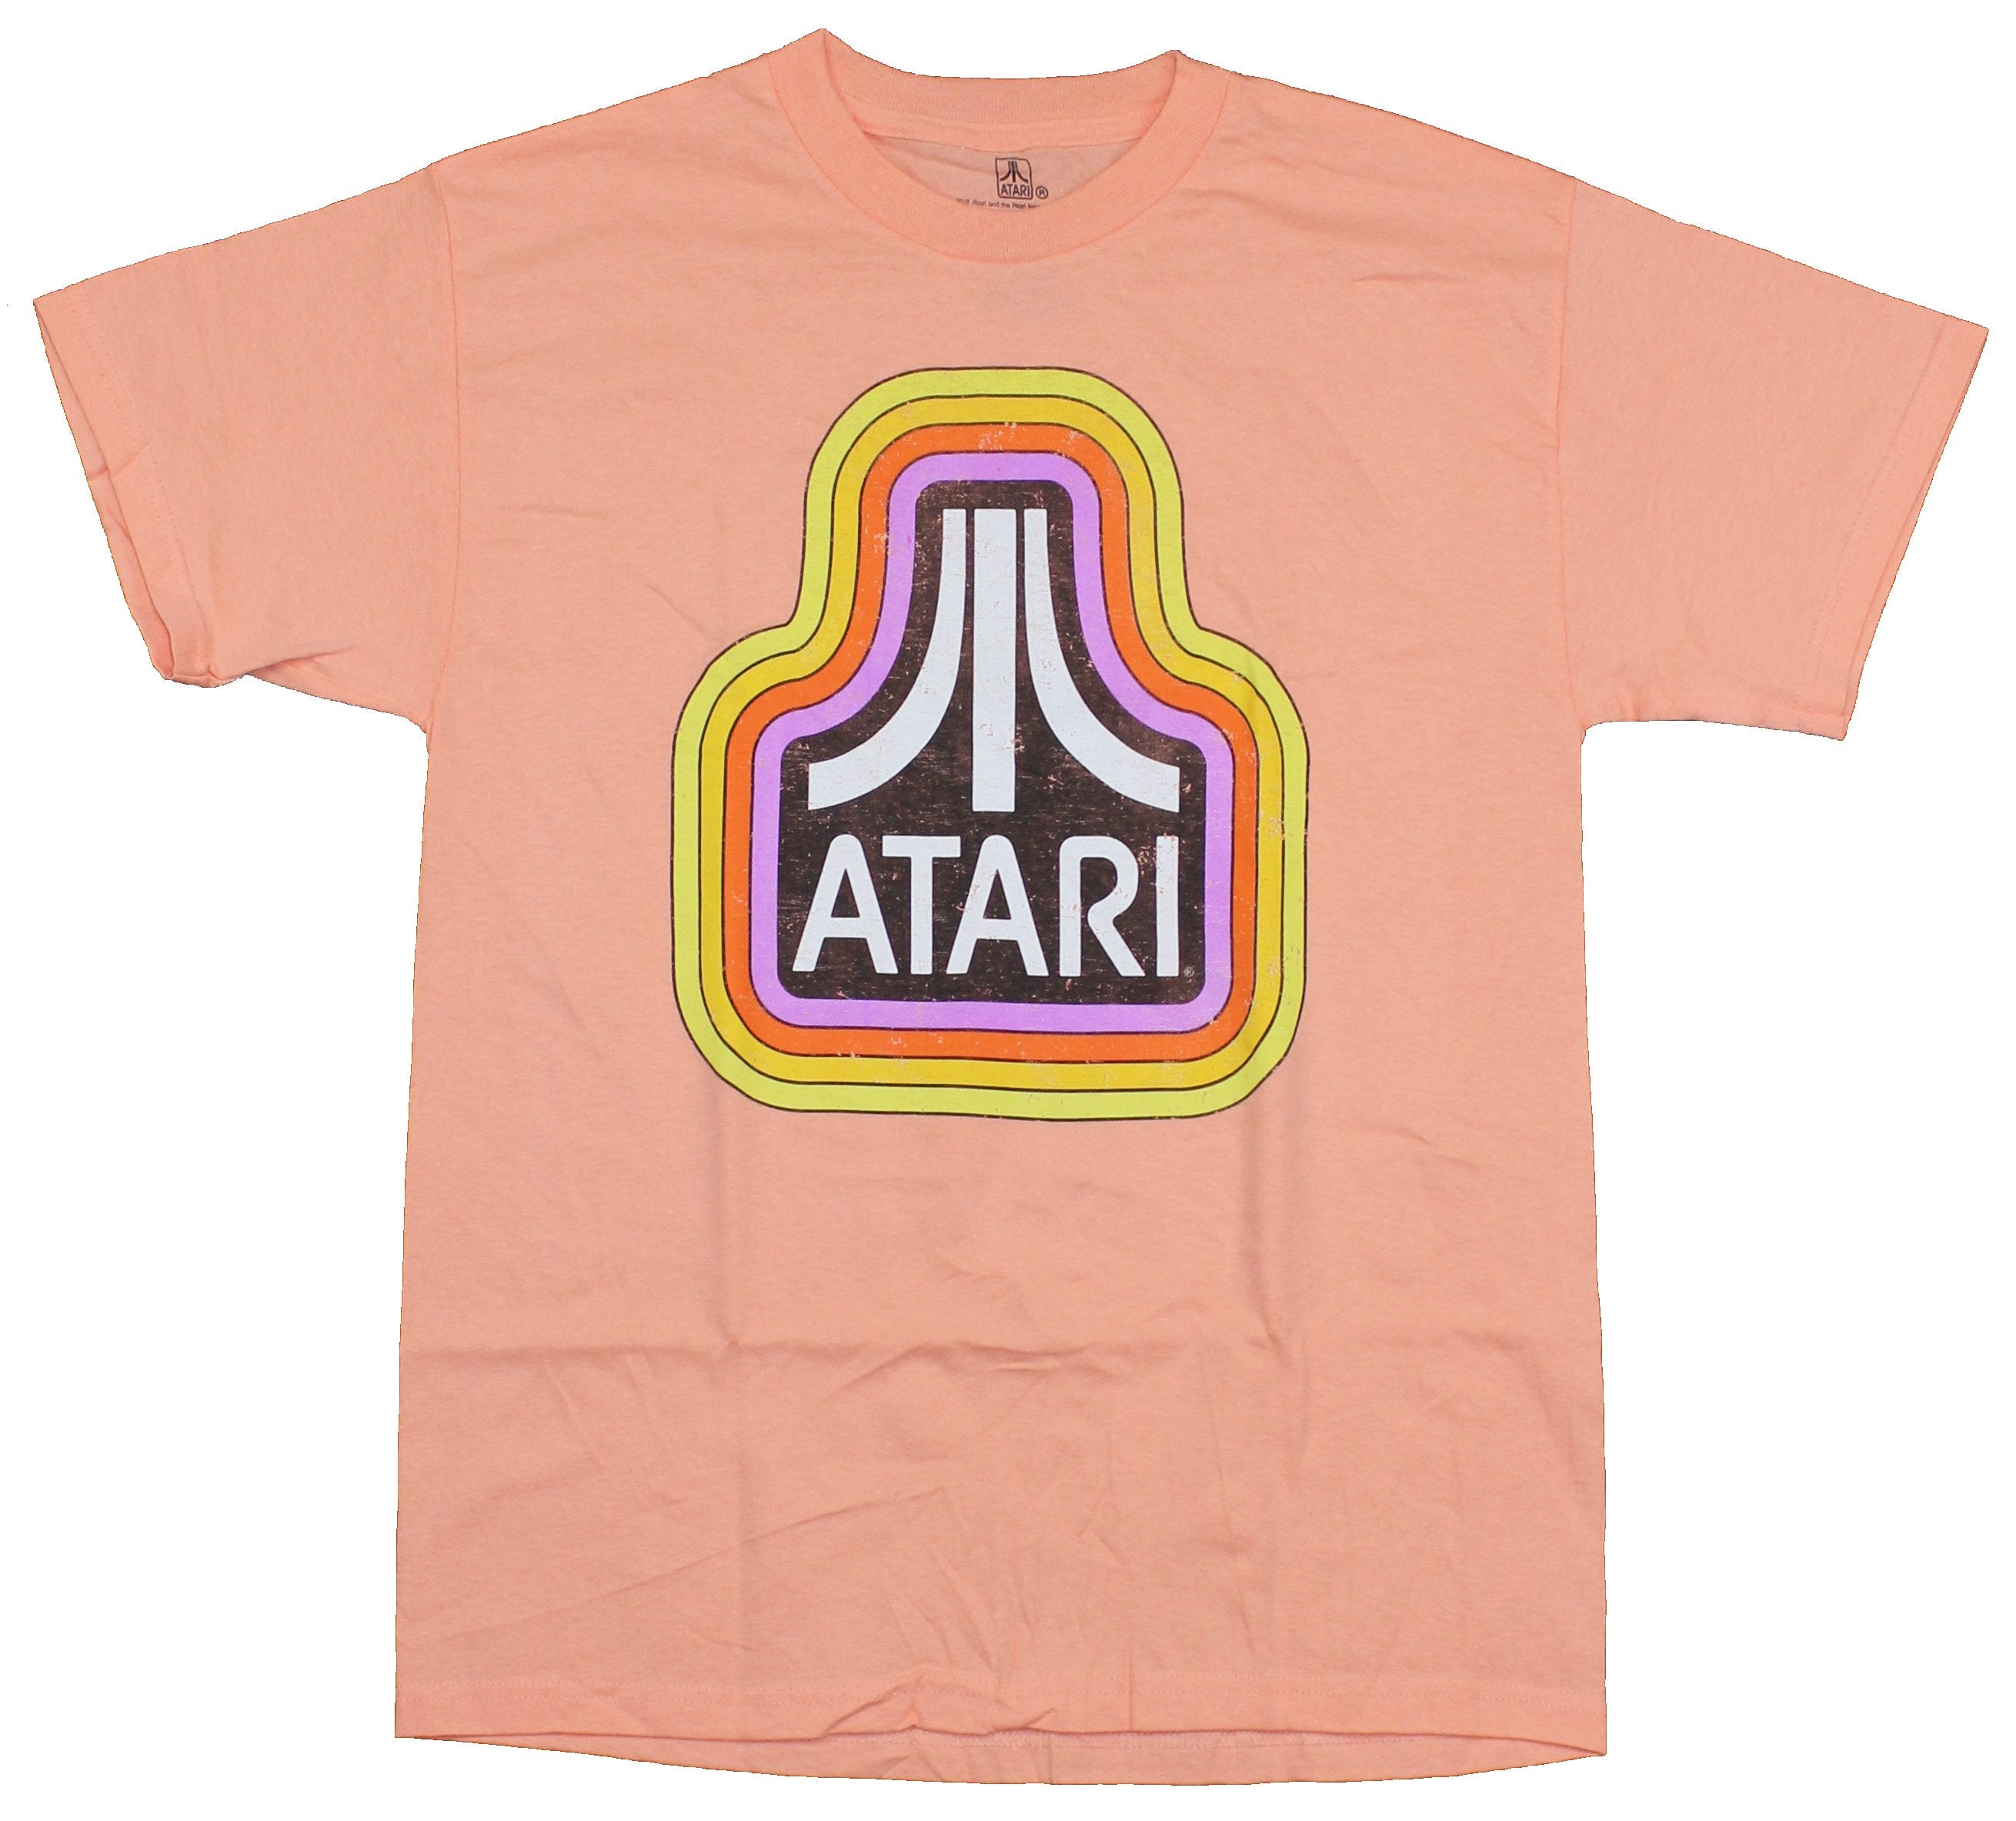 Atari  Mens T-Shirt - Classic Artari Logo Yellow Orange Outlined